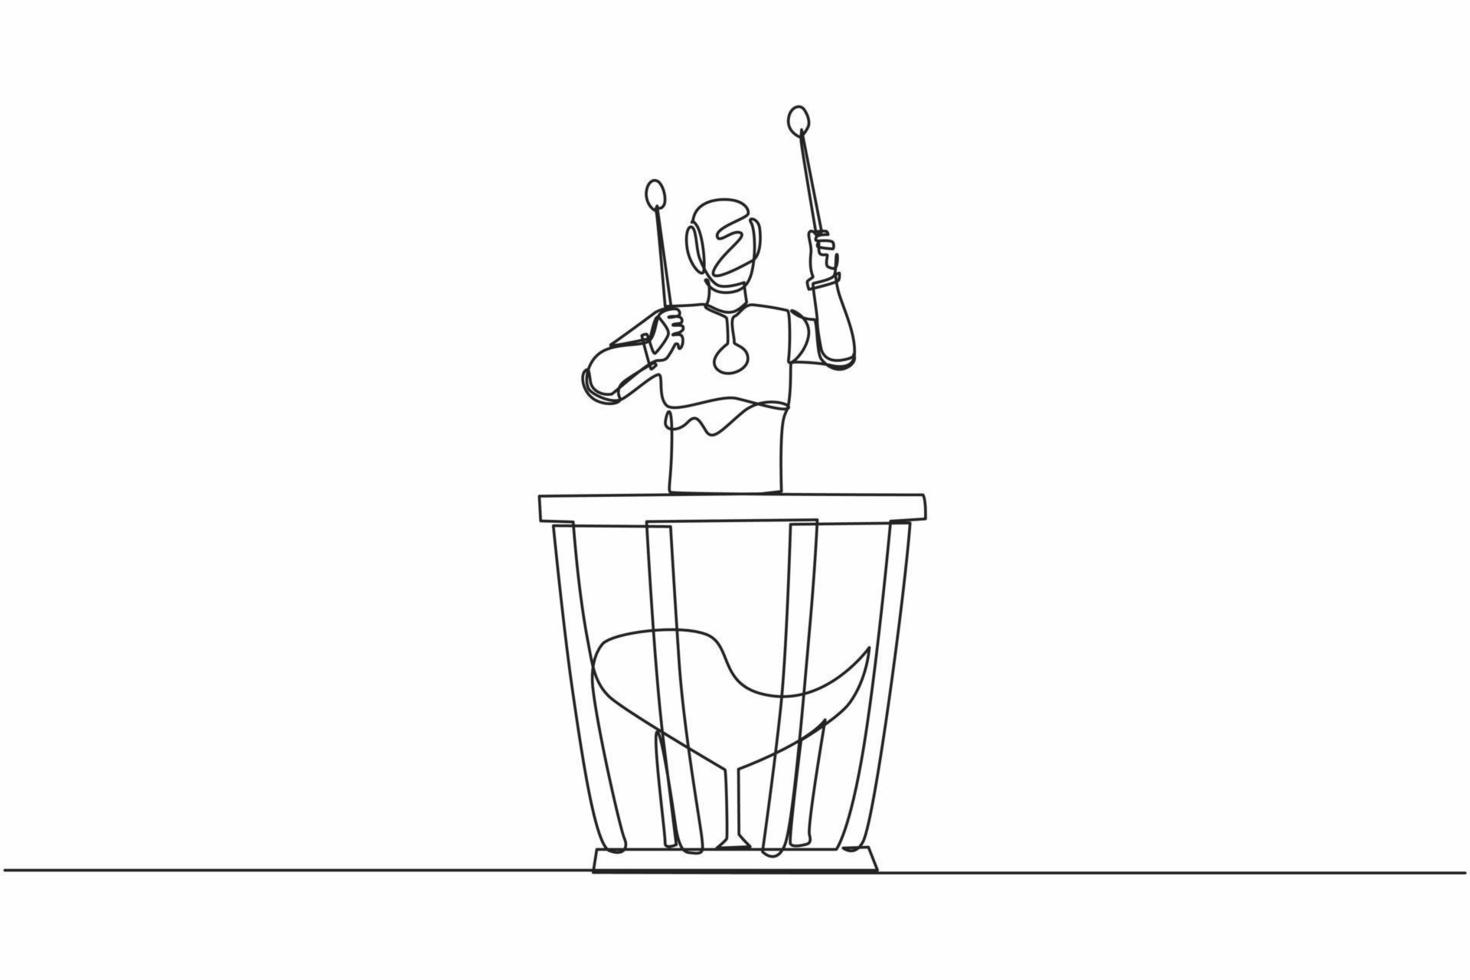 giocatore di percussioni robot con disegno a linea continua singolo che tiene il bastone e suona i timpani. intelligenza artificiale robotica. industria della tecnologia elettronica. illustrazione vettoriale di un disegno grafico a una linea